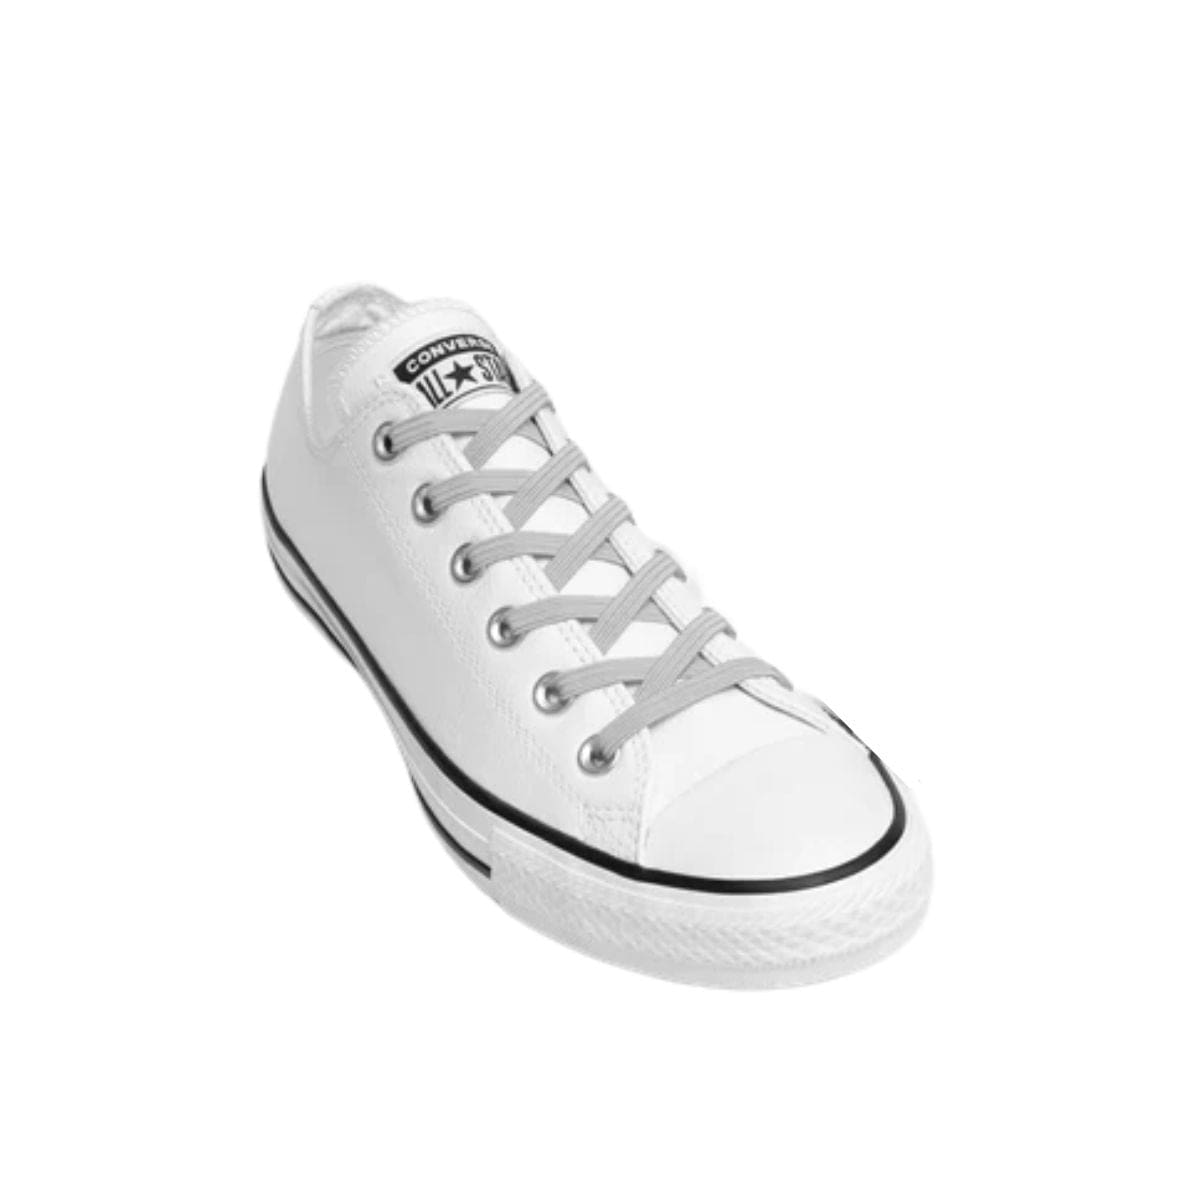 Replacement for Shoe Laces Grey No-Tie Shoelaces - Kicks Shoelaces